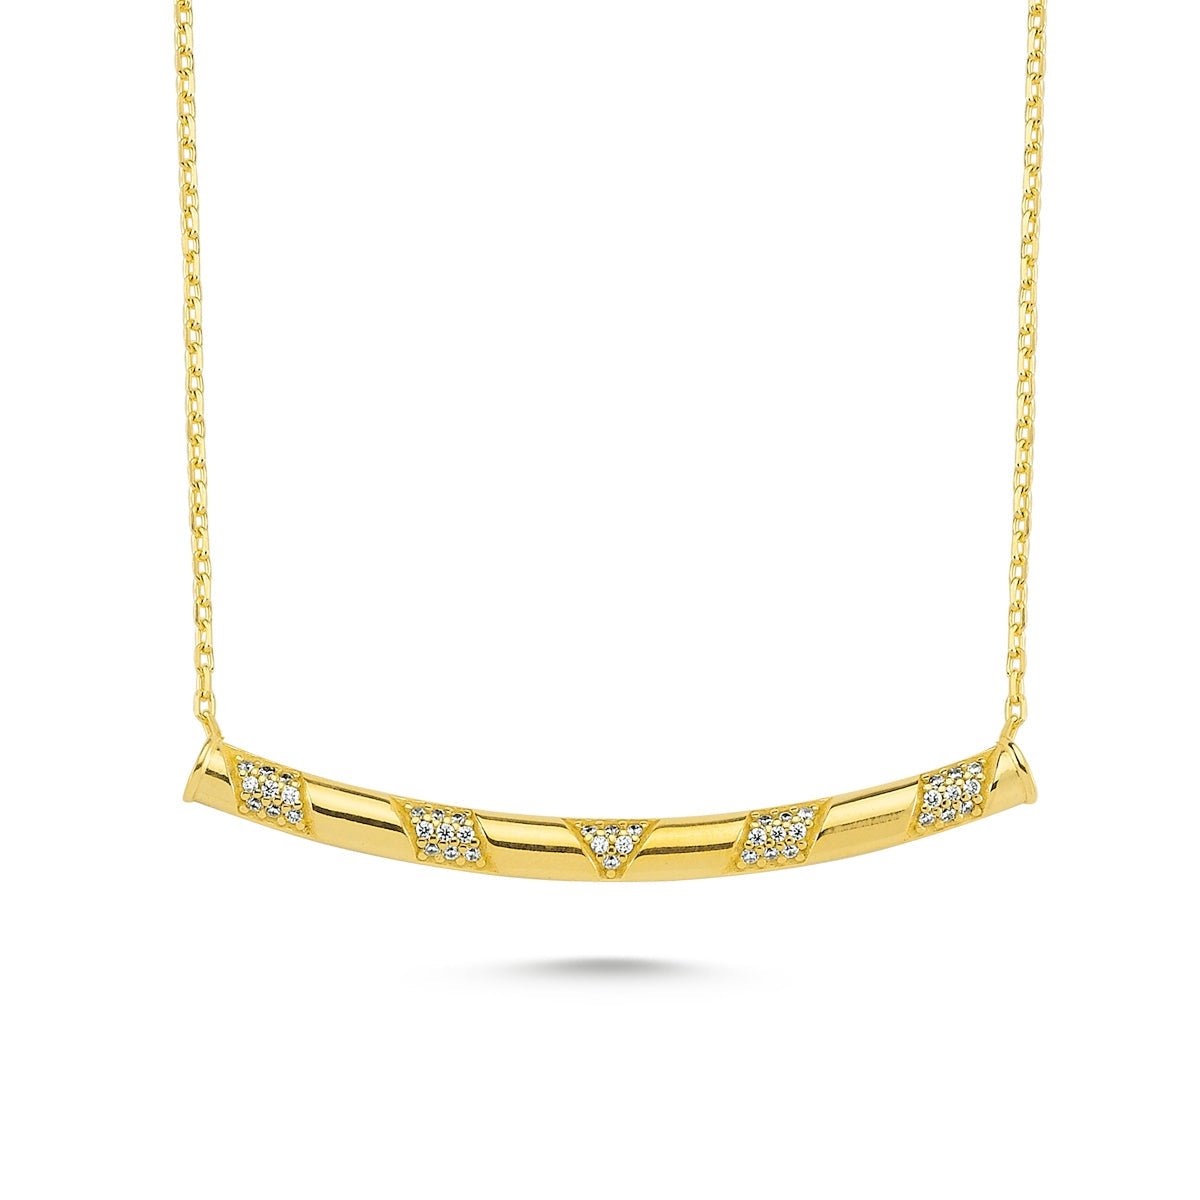 Chevron Tube Necklace - amoriumjewelry